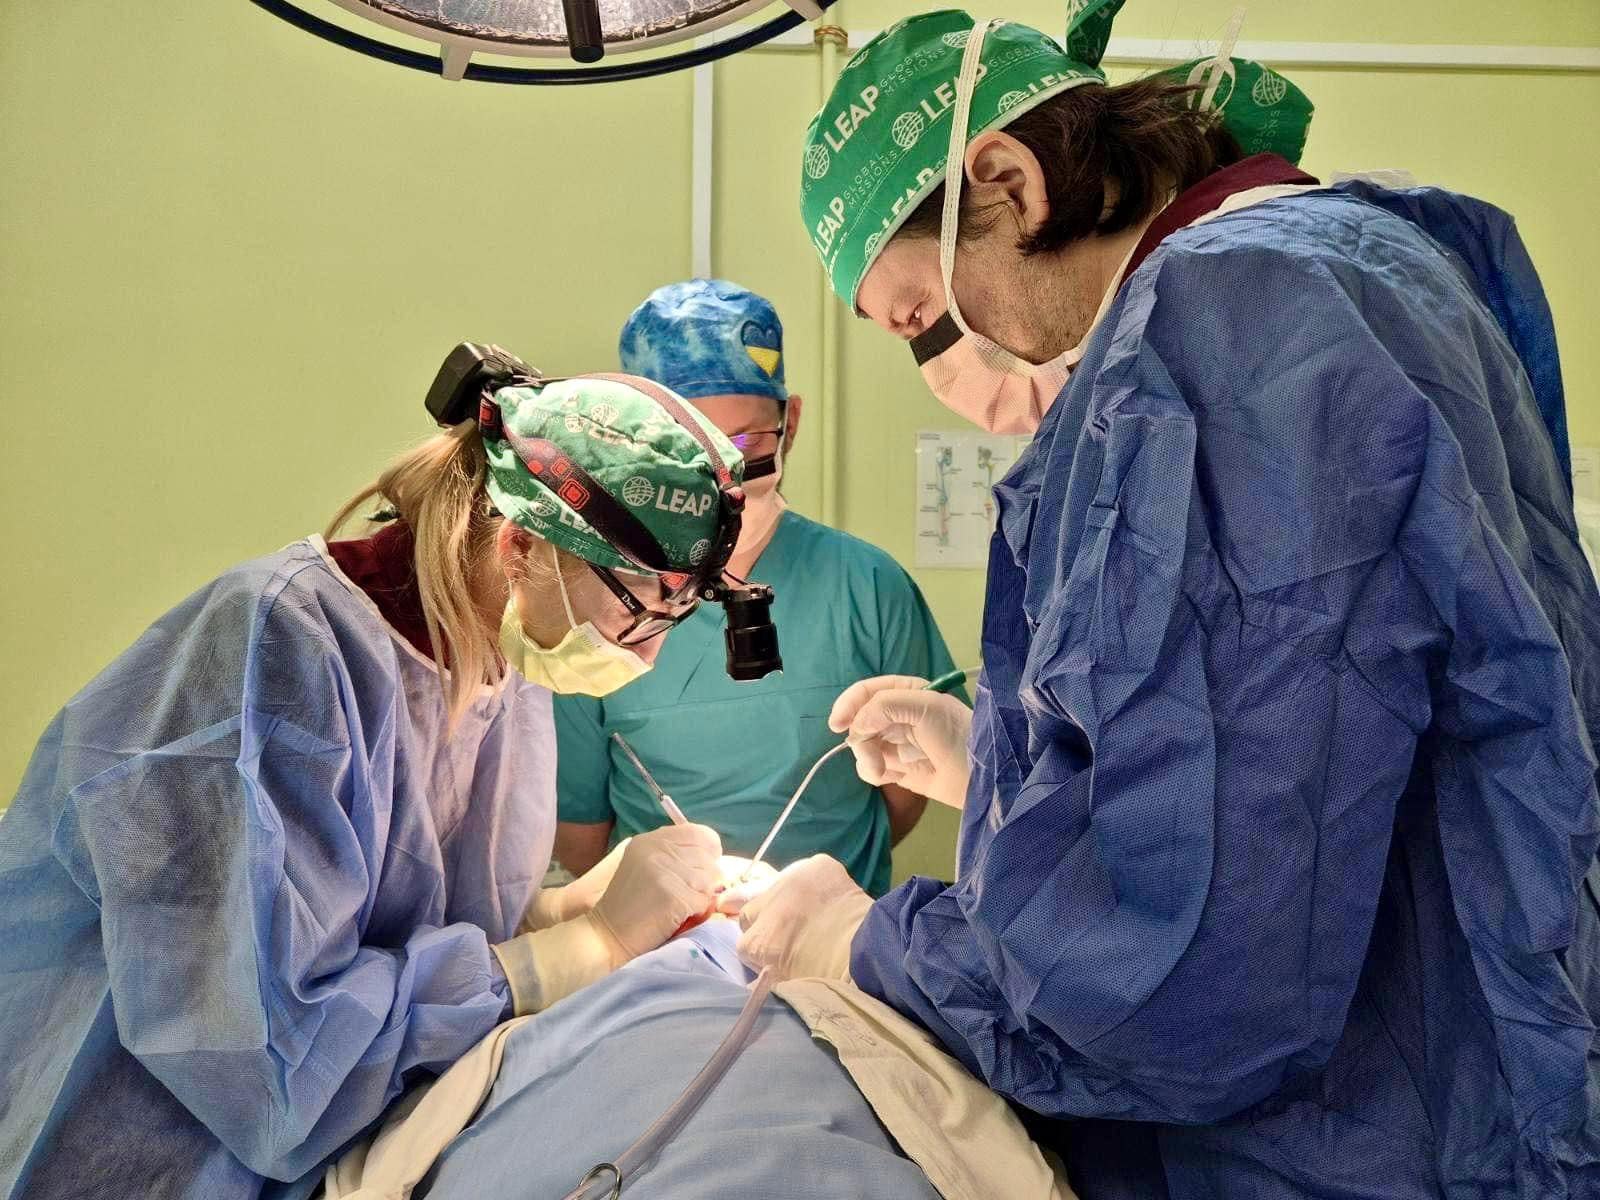 Оперували хірурги Христина Погранична (Христина Погранична) та Марк Гнатюк (Mark Hnatiuk), анестезіологічний супровід – Олена Горінецька.